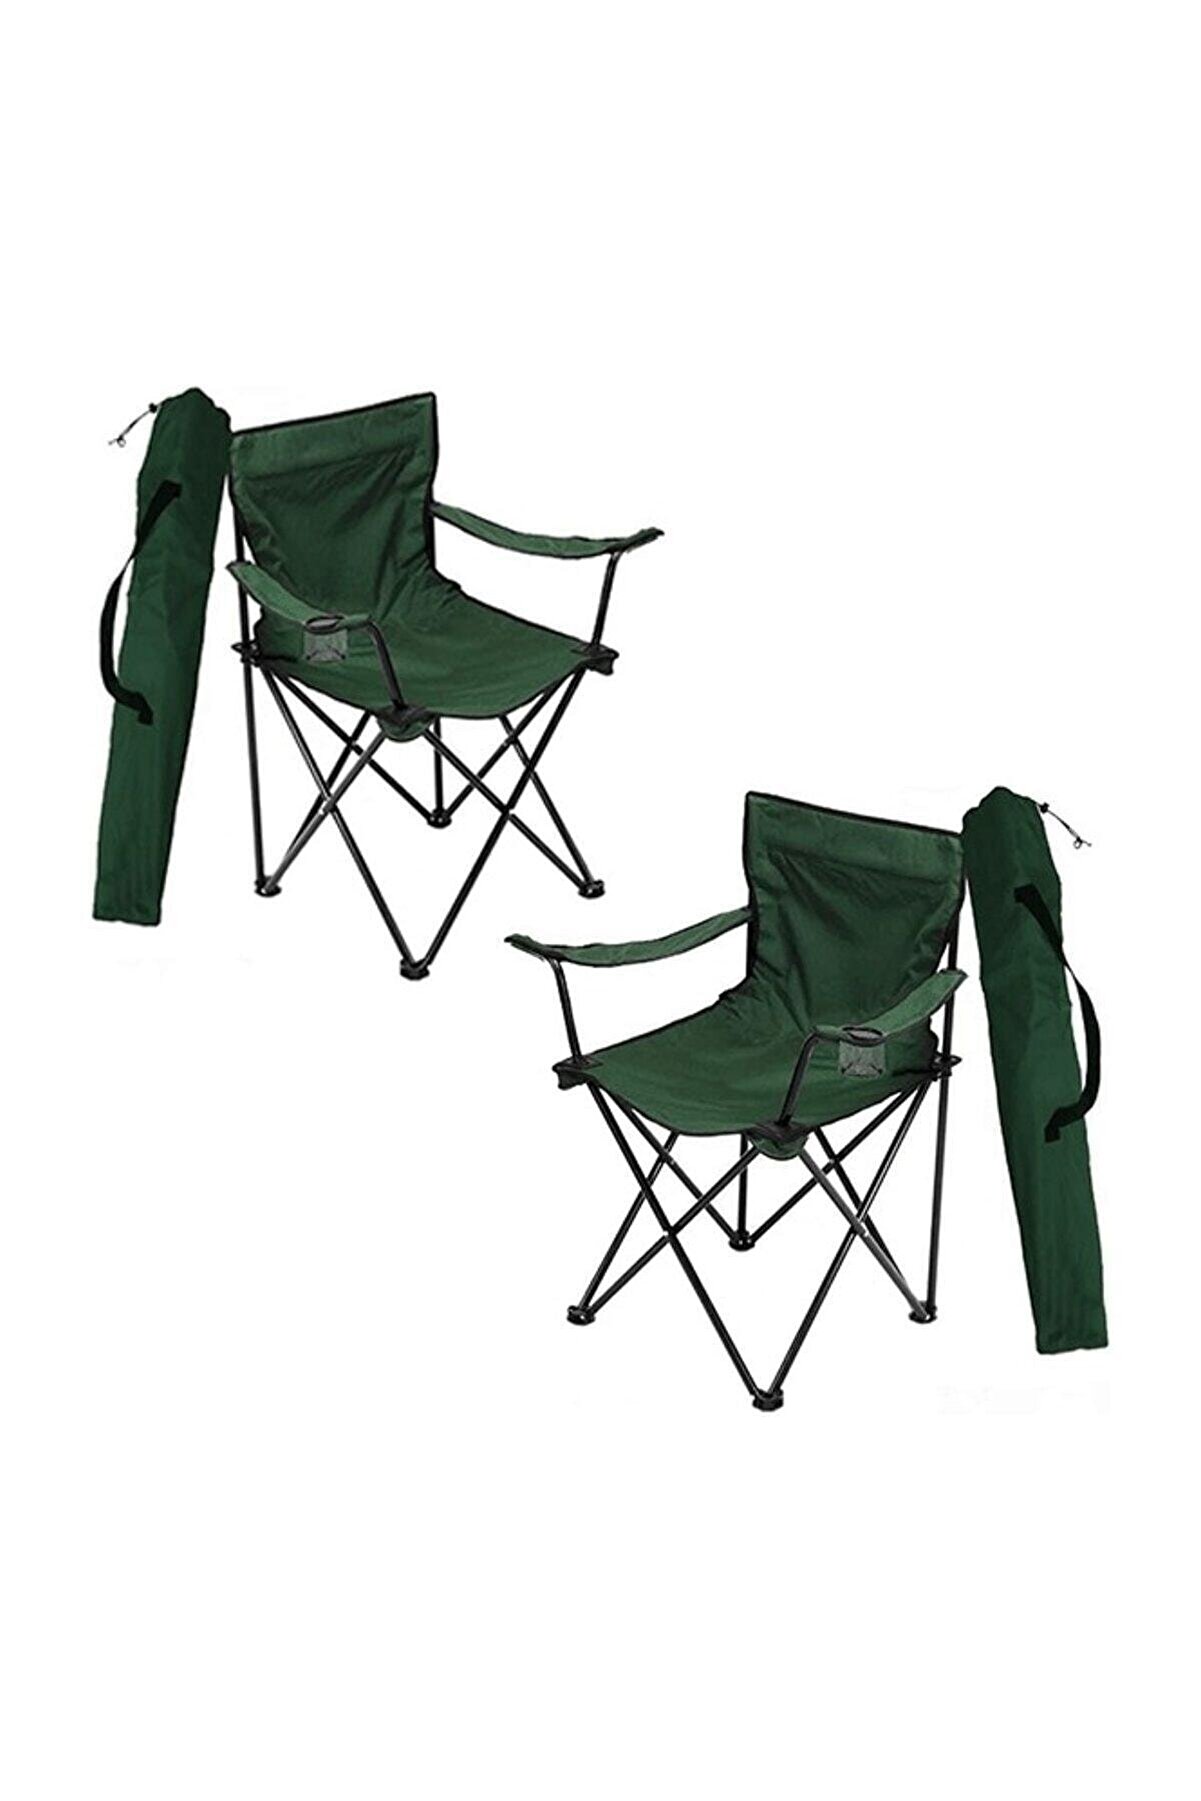 Bofigo 2 Adet Kamp Sandalyesi Katlanır Sandalye Bahçe Koltuğu Piknik Plaj Balkon Sandalyesi Yeşil